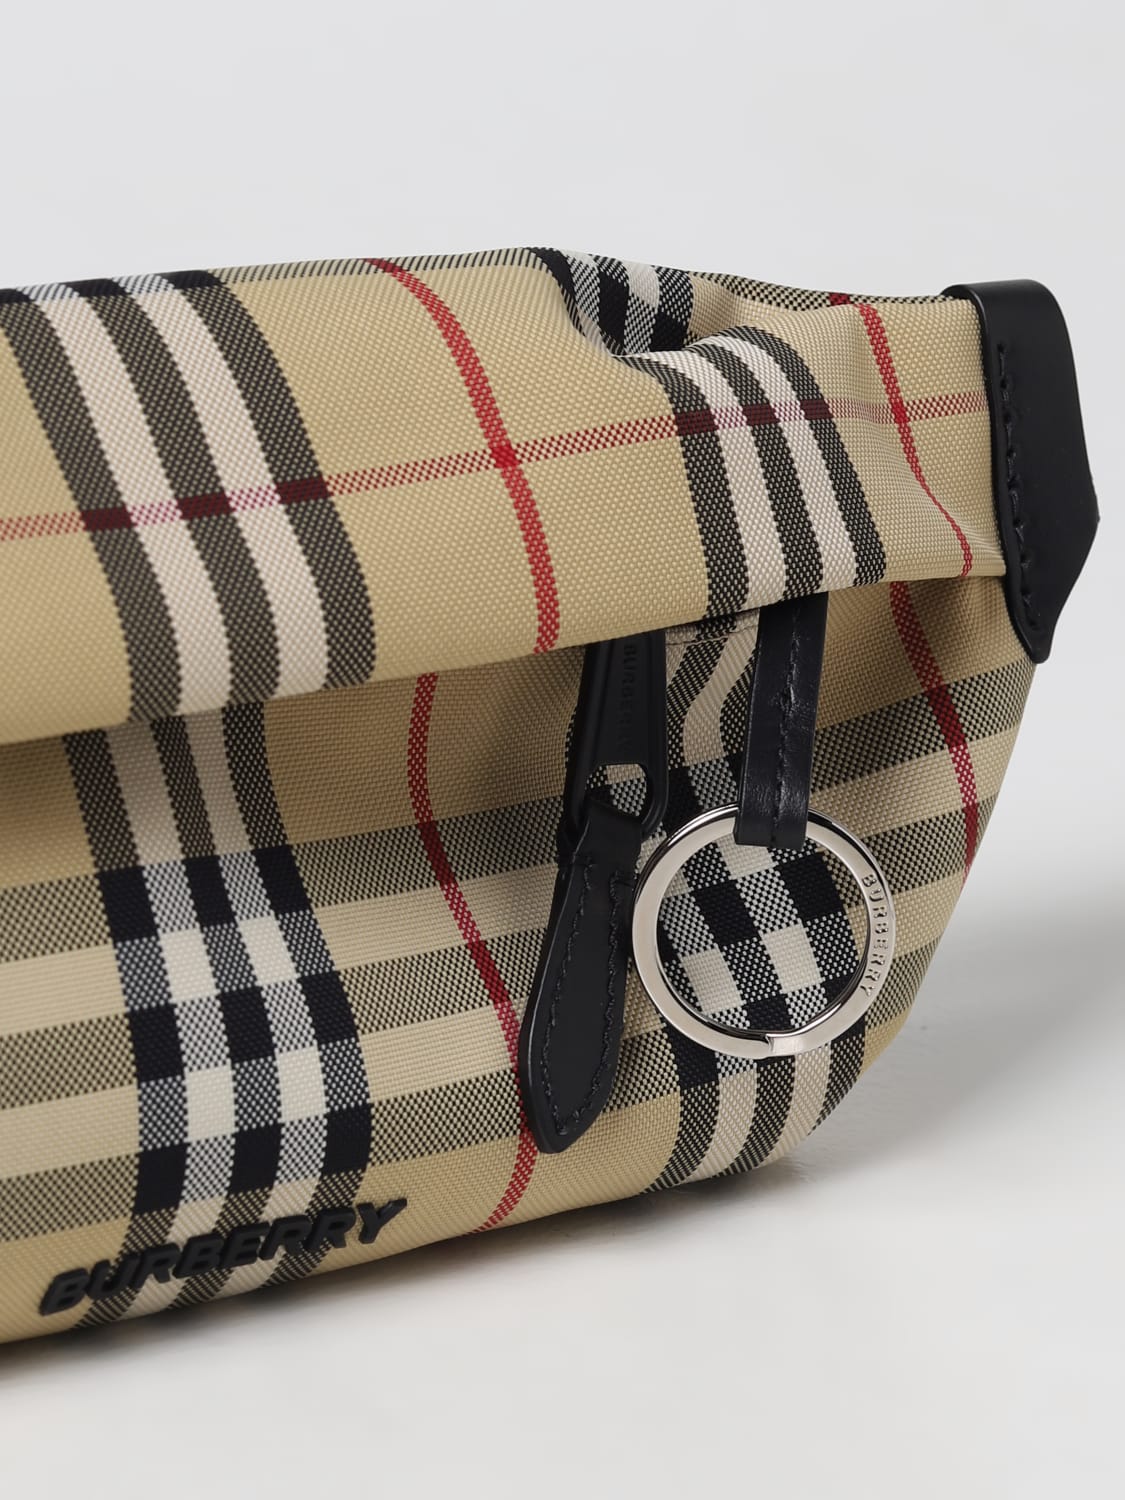 BURBERRY: belt bag for man - Multicolor | Burberry belt bag 8070660 ...